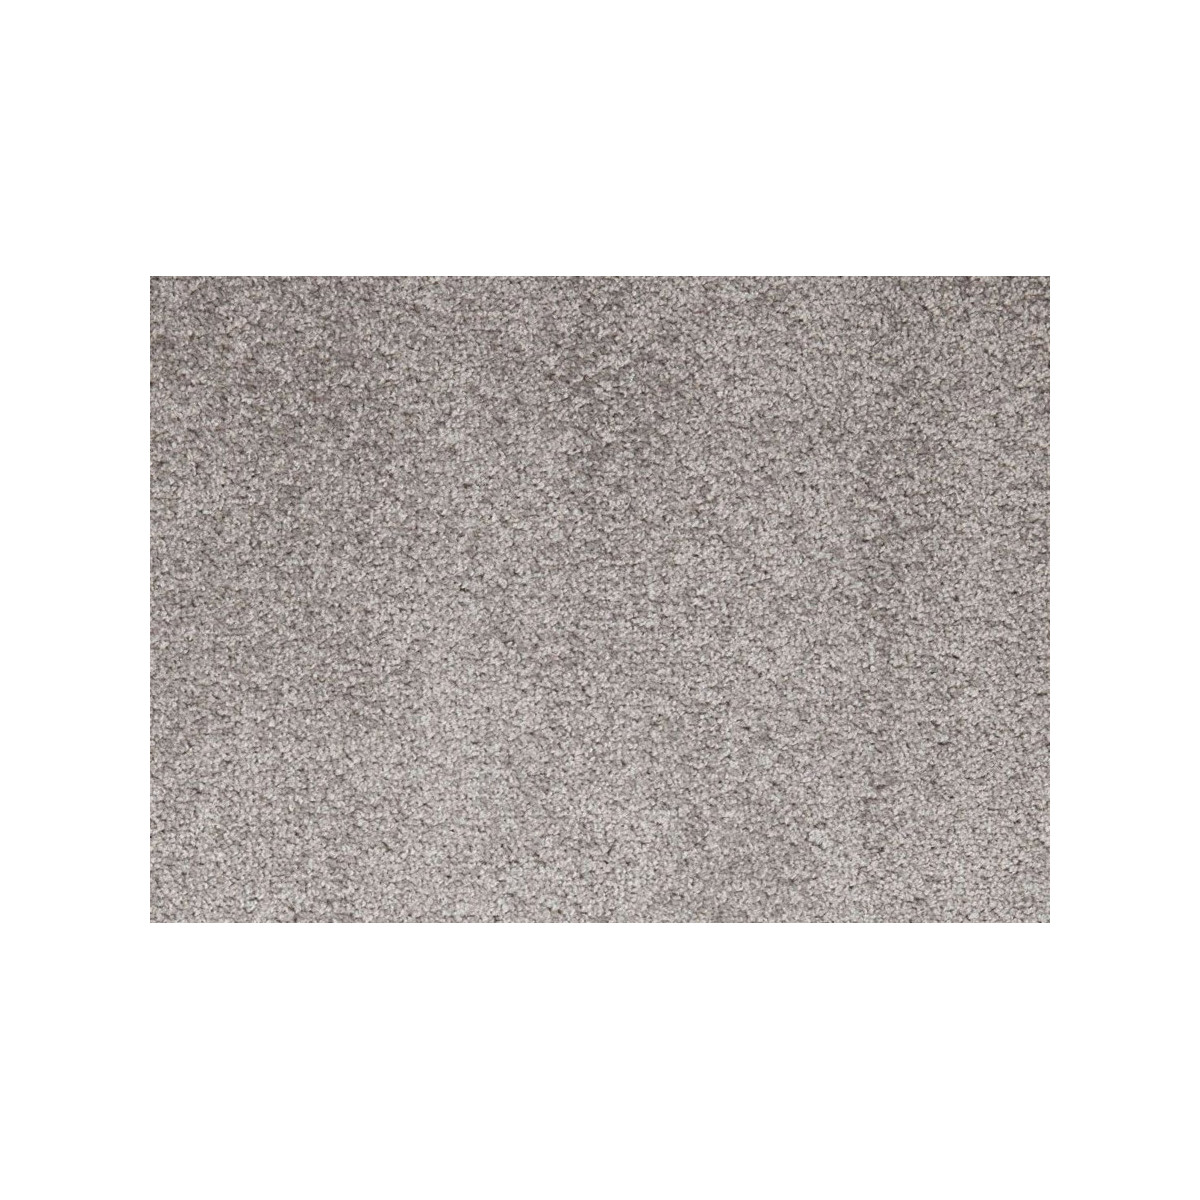 AKCE: 620x58 cm Metrážový koberec Dynasty 73